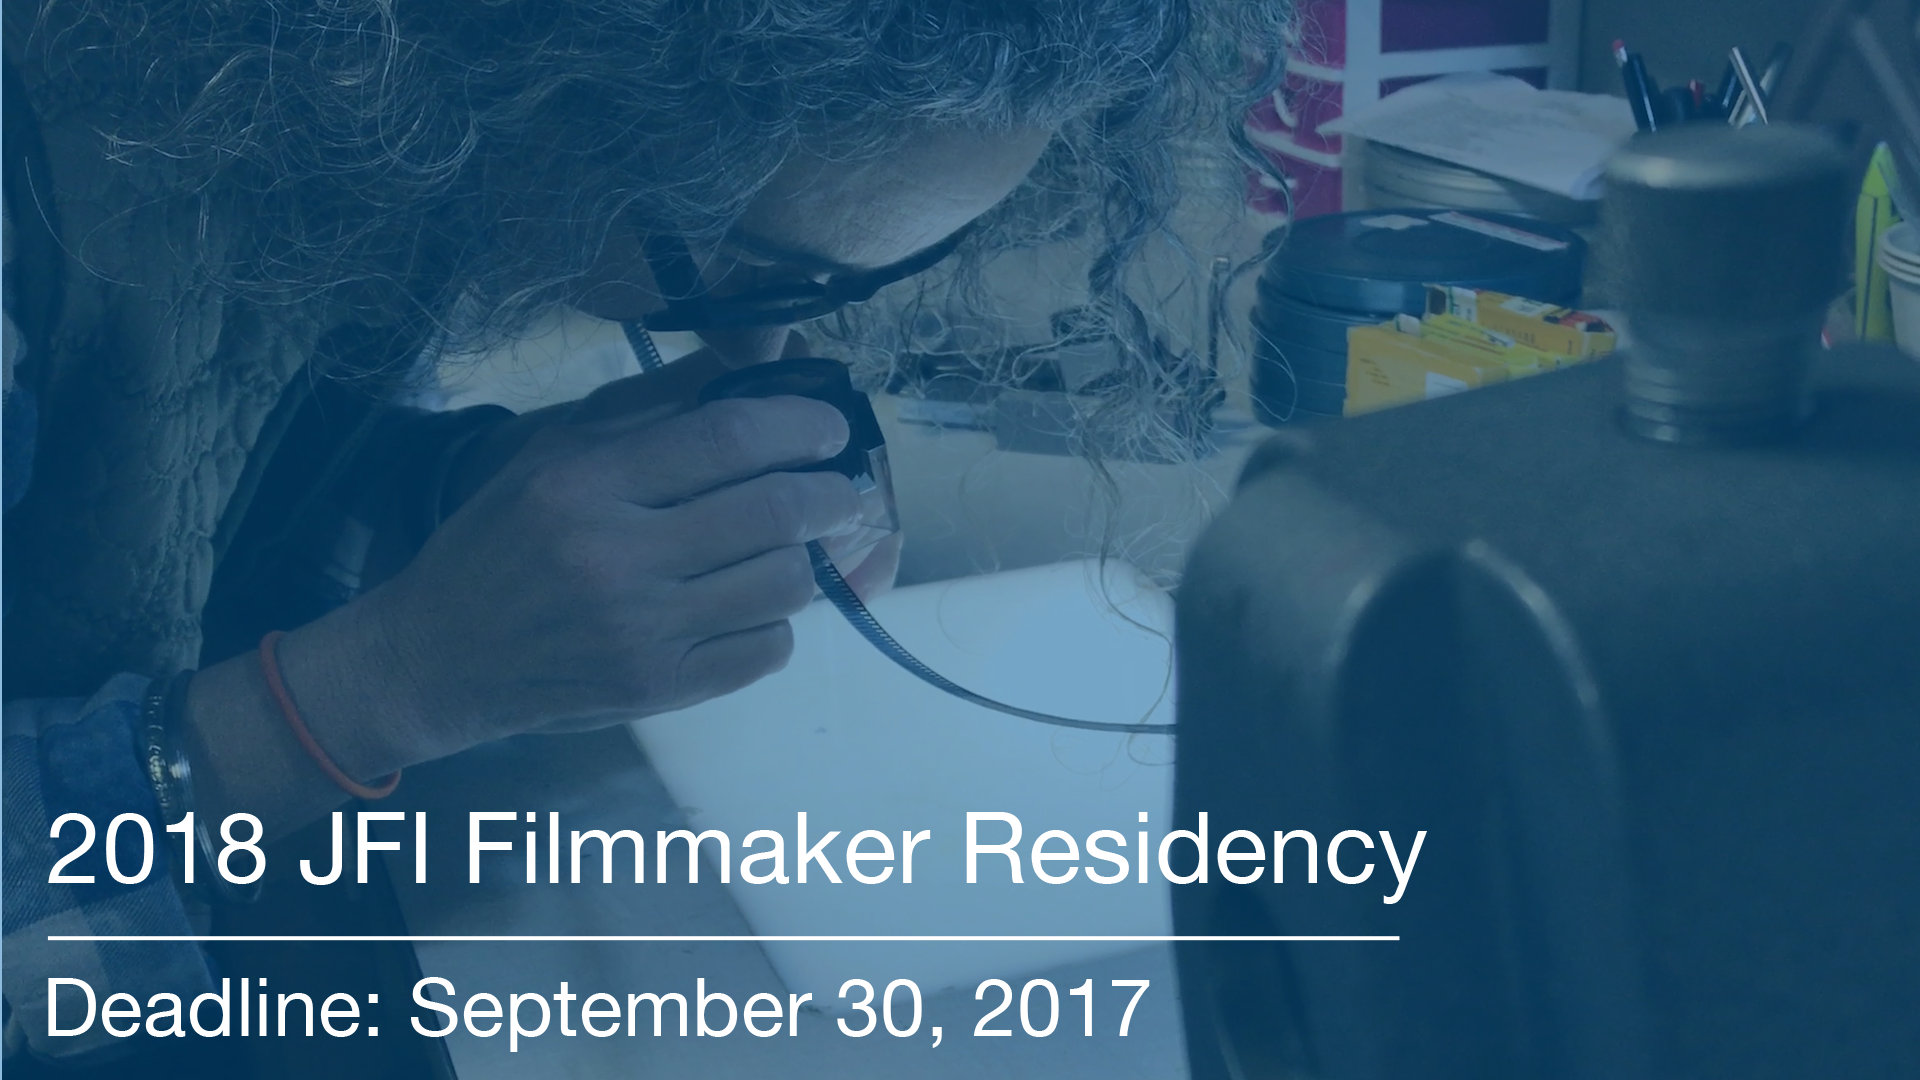 Apply for the 2018 JFI Filmmaker Residency